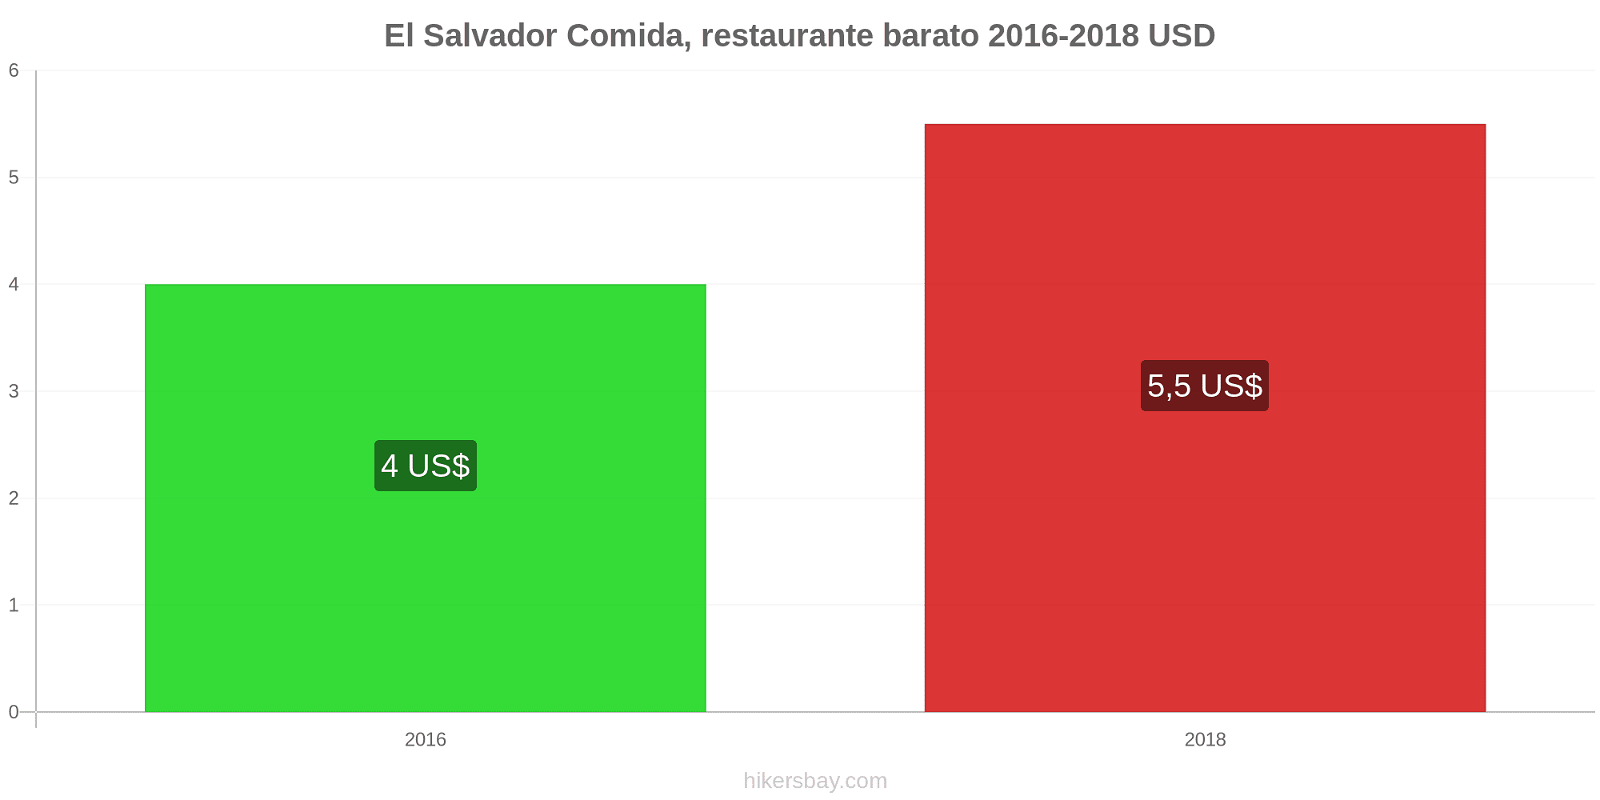 El Salvador cambios de precios Comida en un restaurante económico hikersbay.com